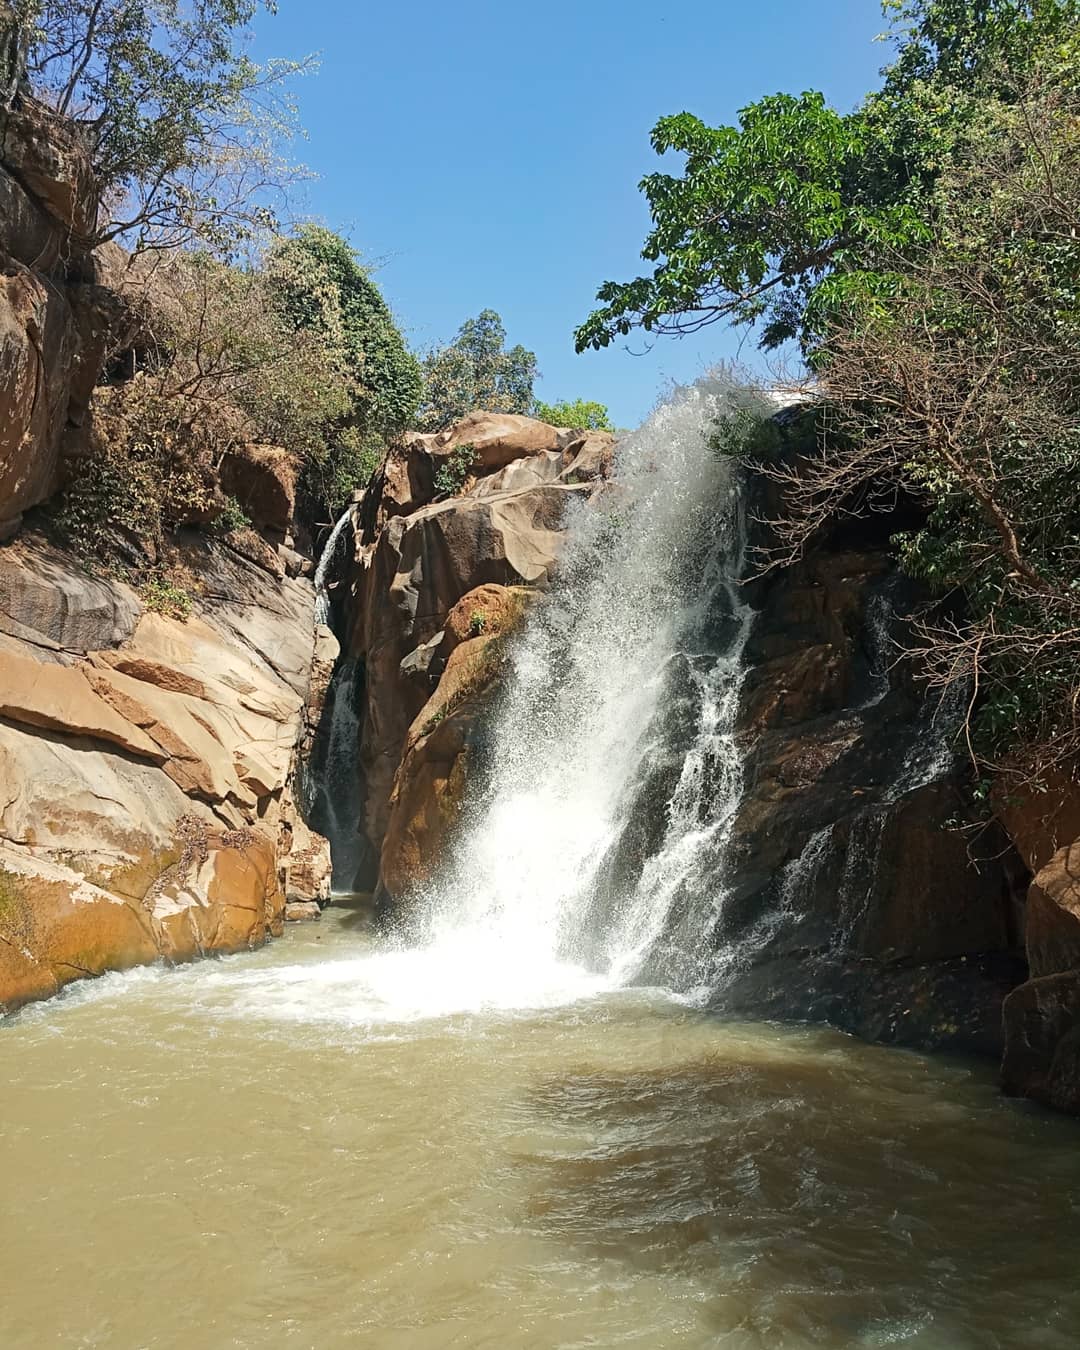 waterfalls in nigeria: Assop falls